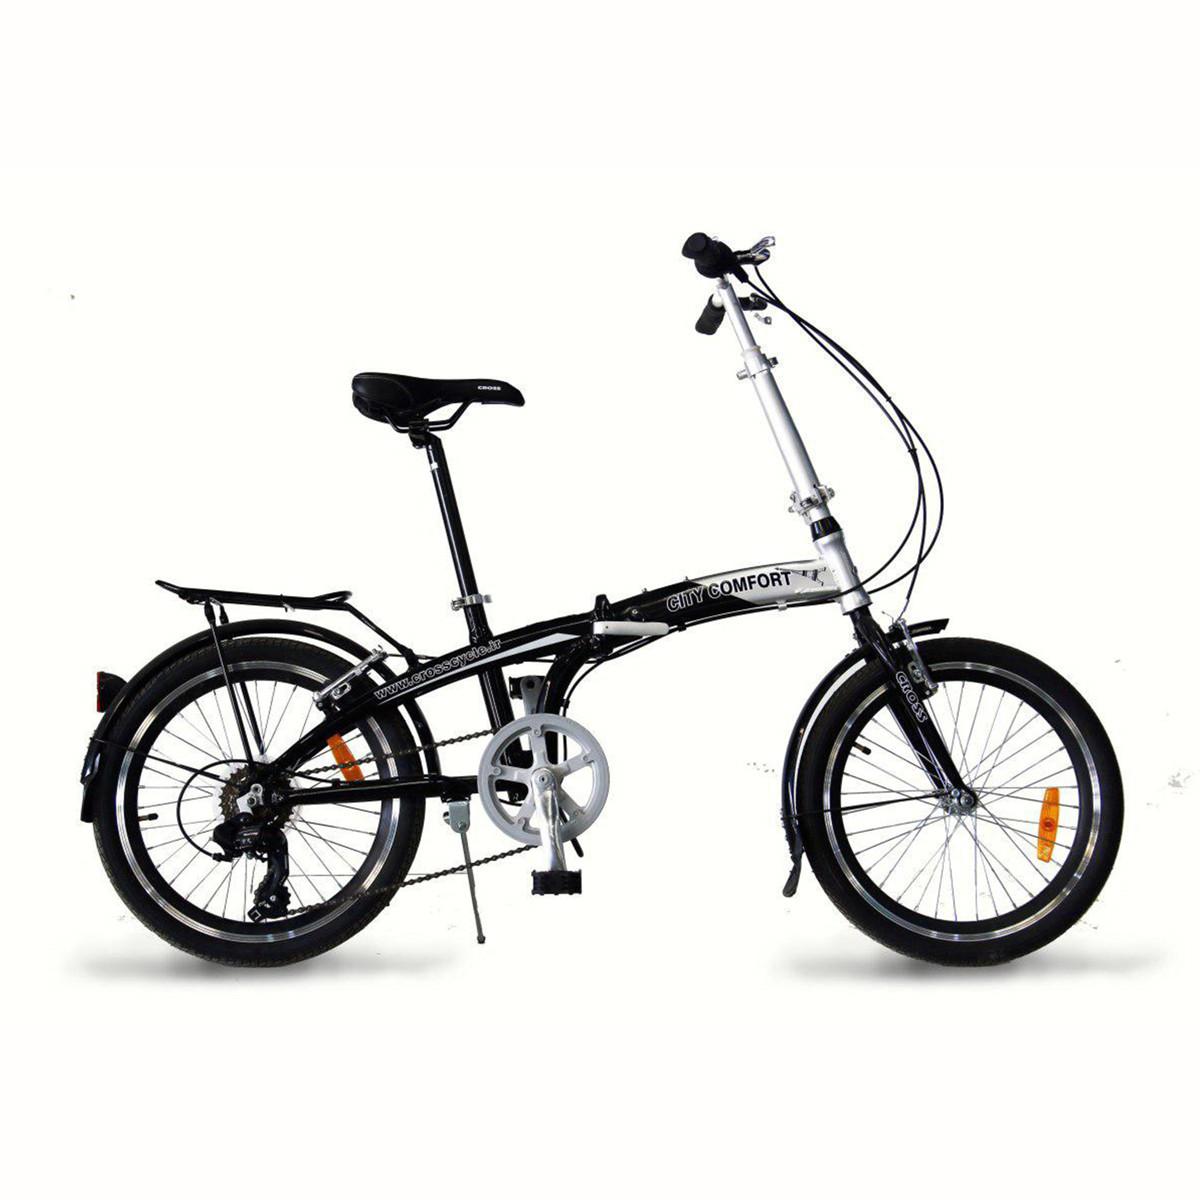 دوچرخه شهری تاشو کراس اسپرت - خرید دوچرخه شهری - خرید دوچرخه تاشو - crosssport